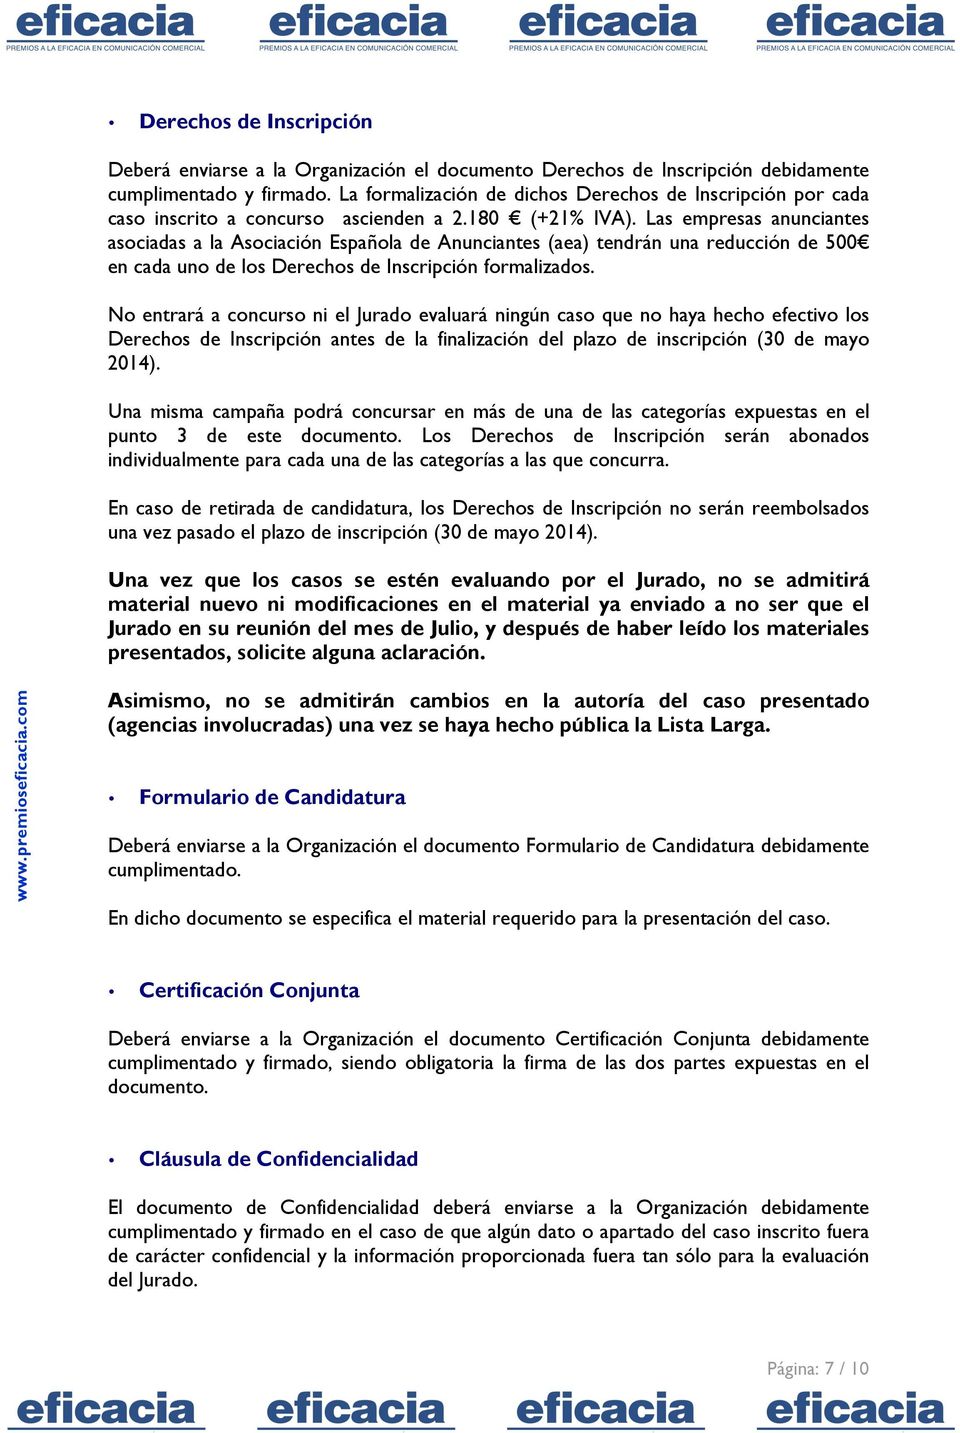 Las empresas anunciantes asociadas a la Asociación Española de Anunciantes (aea) tendrán una reducción de 500 en cada uno de los Derechos de Inscripción formalizados.